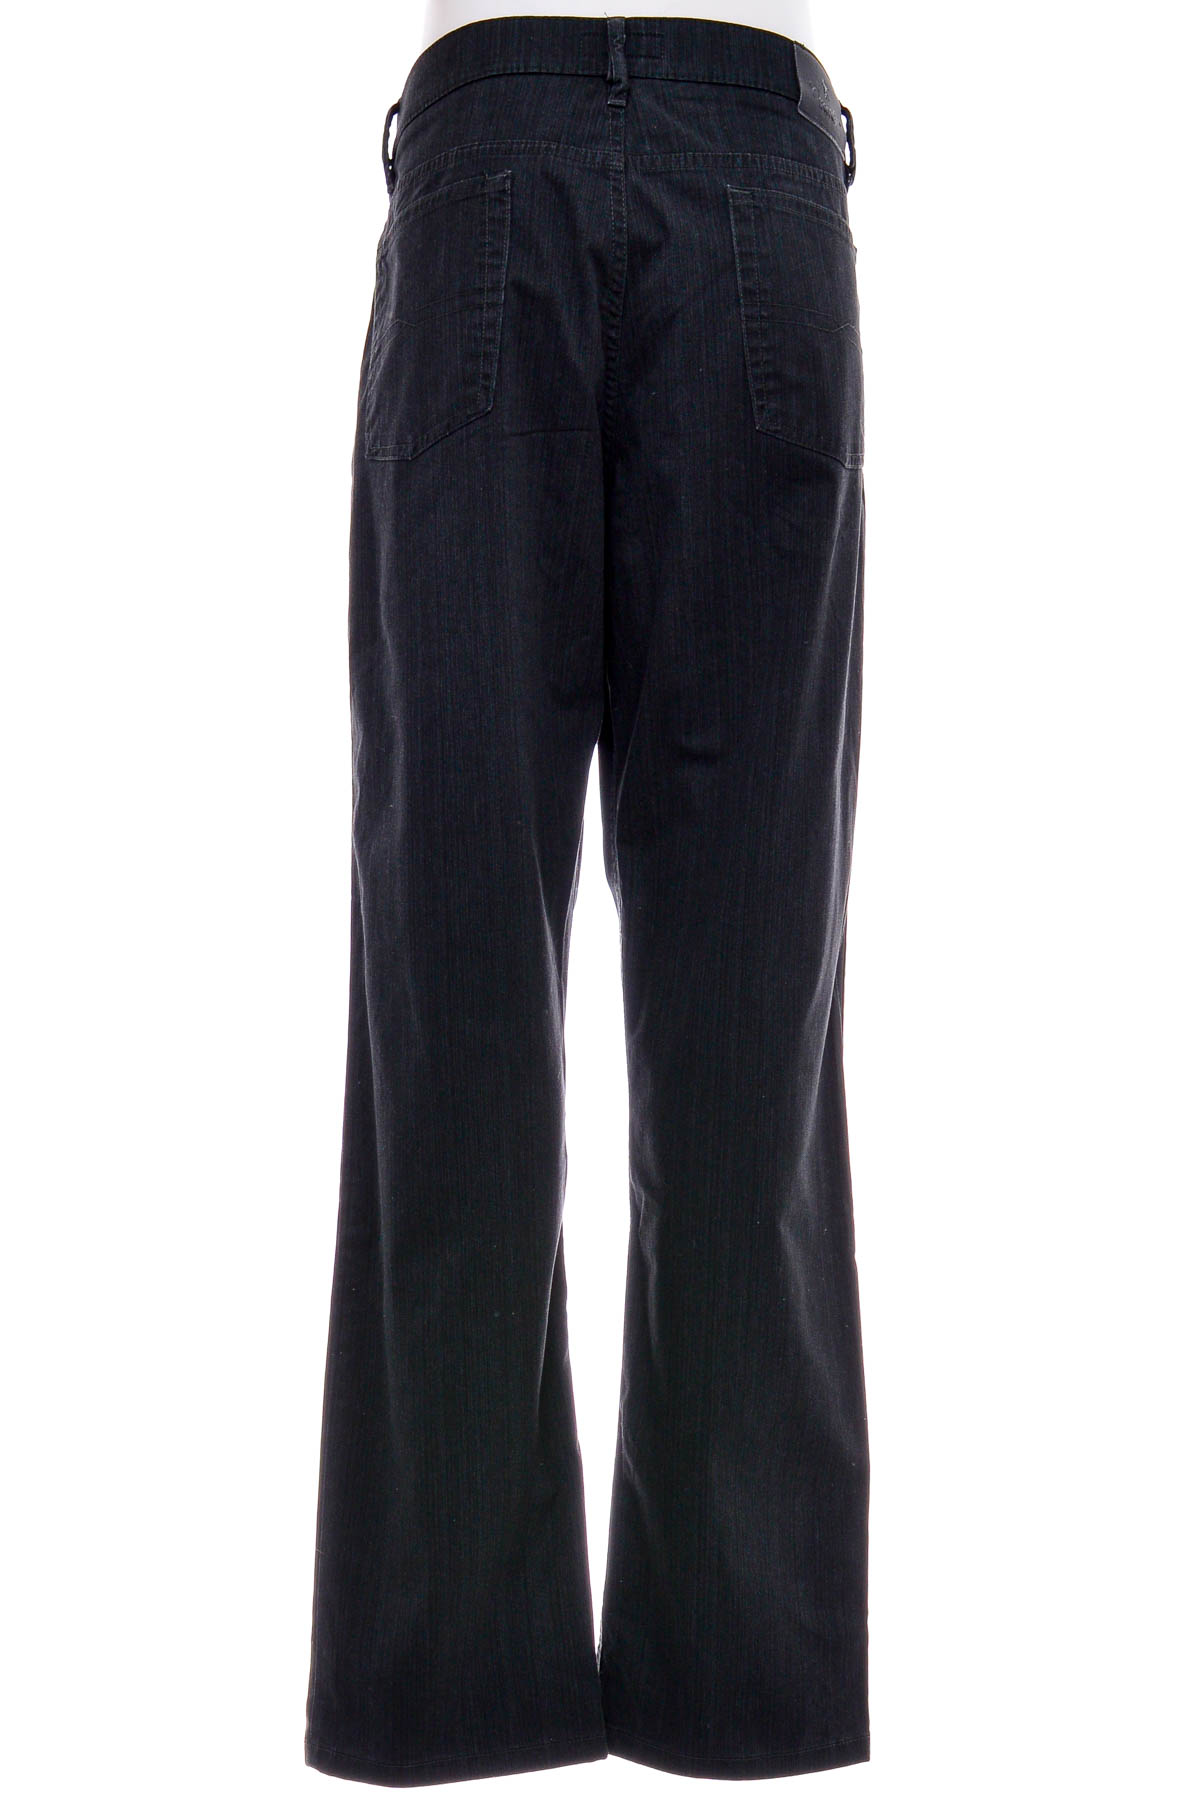 Pantalon pentru bărbați - Garnaby's - 1